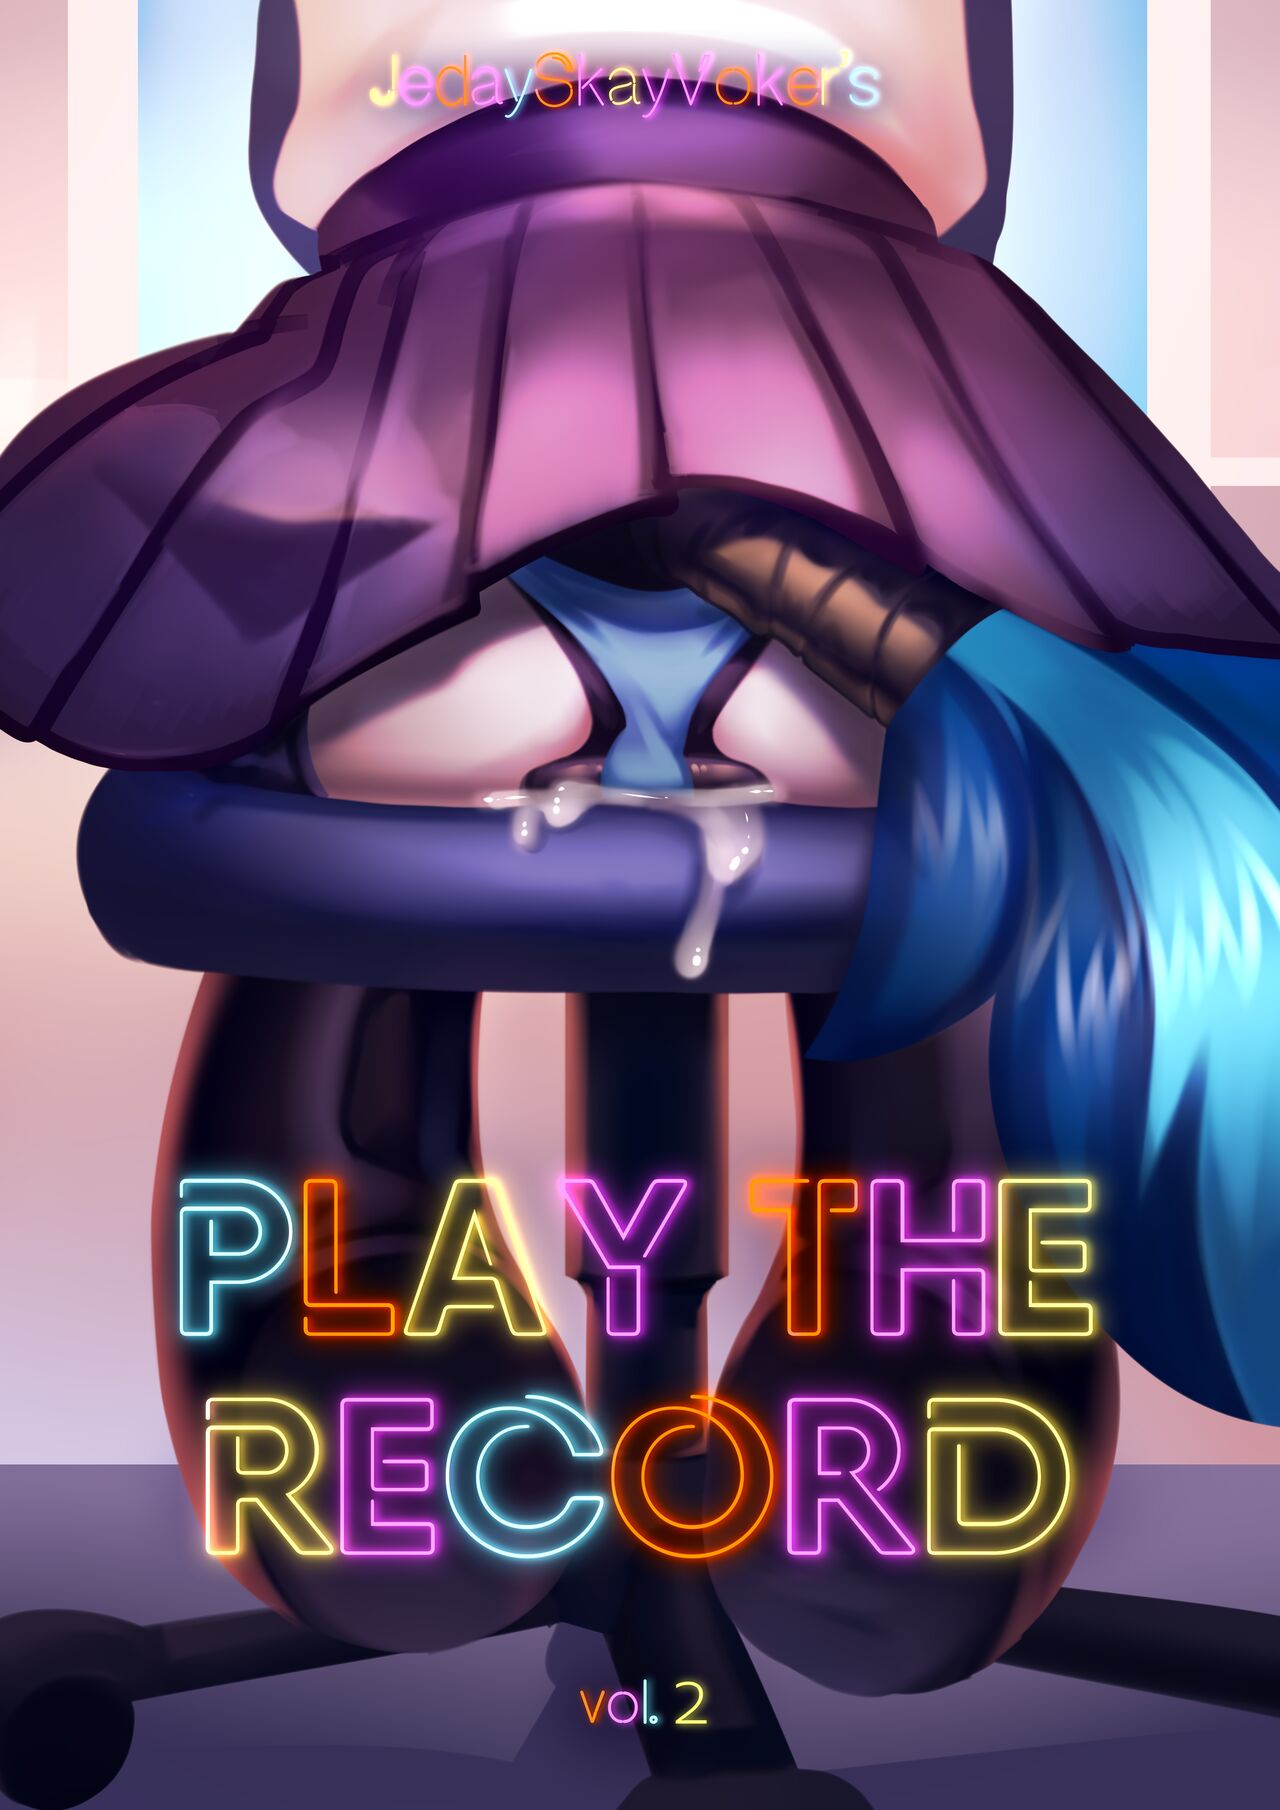 Play The Record 2 Jedayskayvoker 01